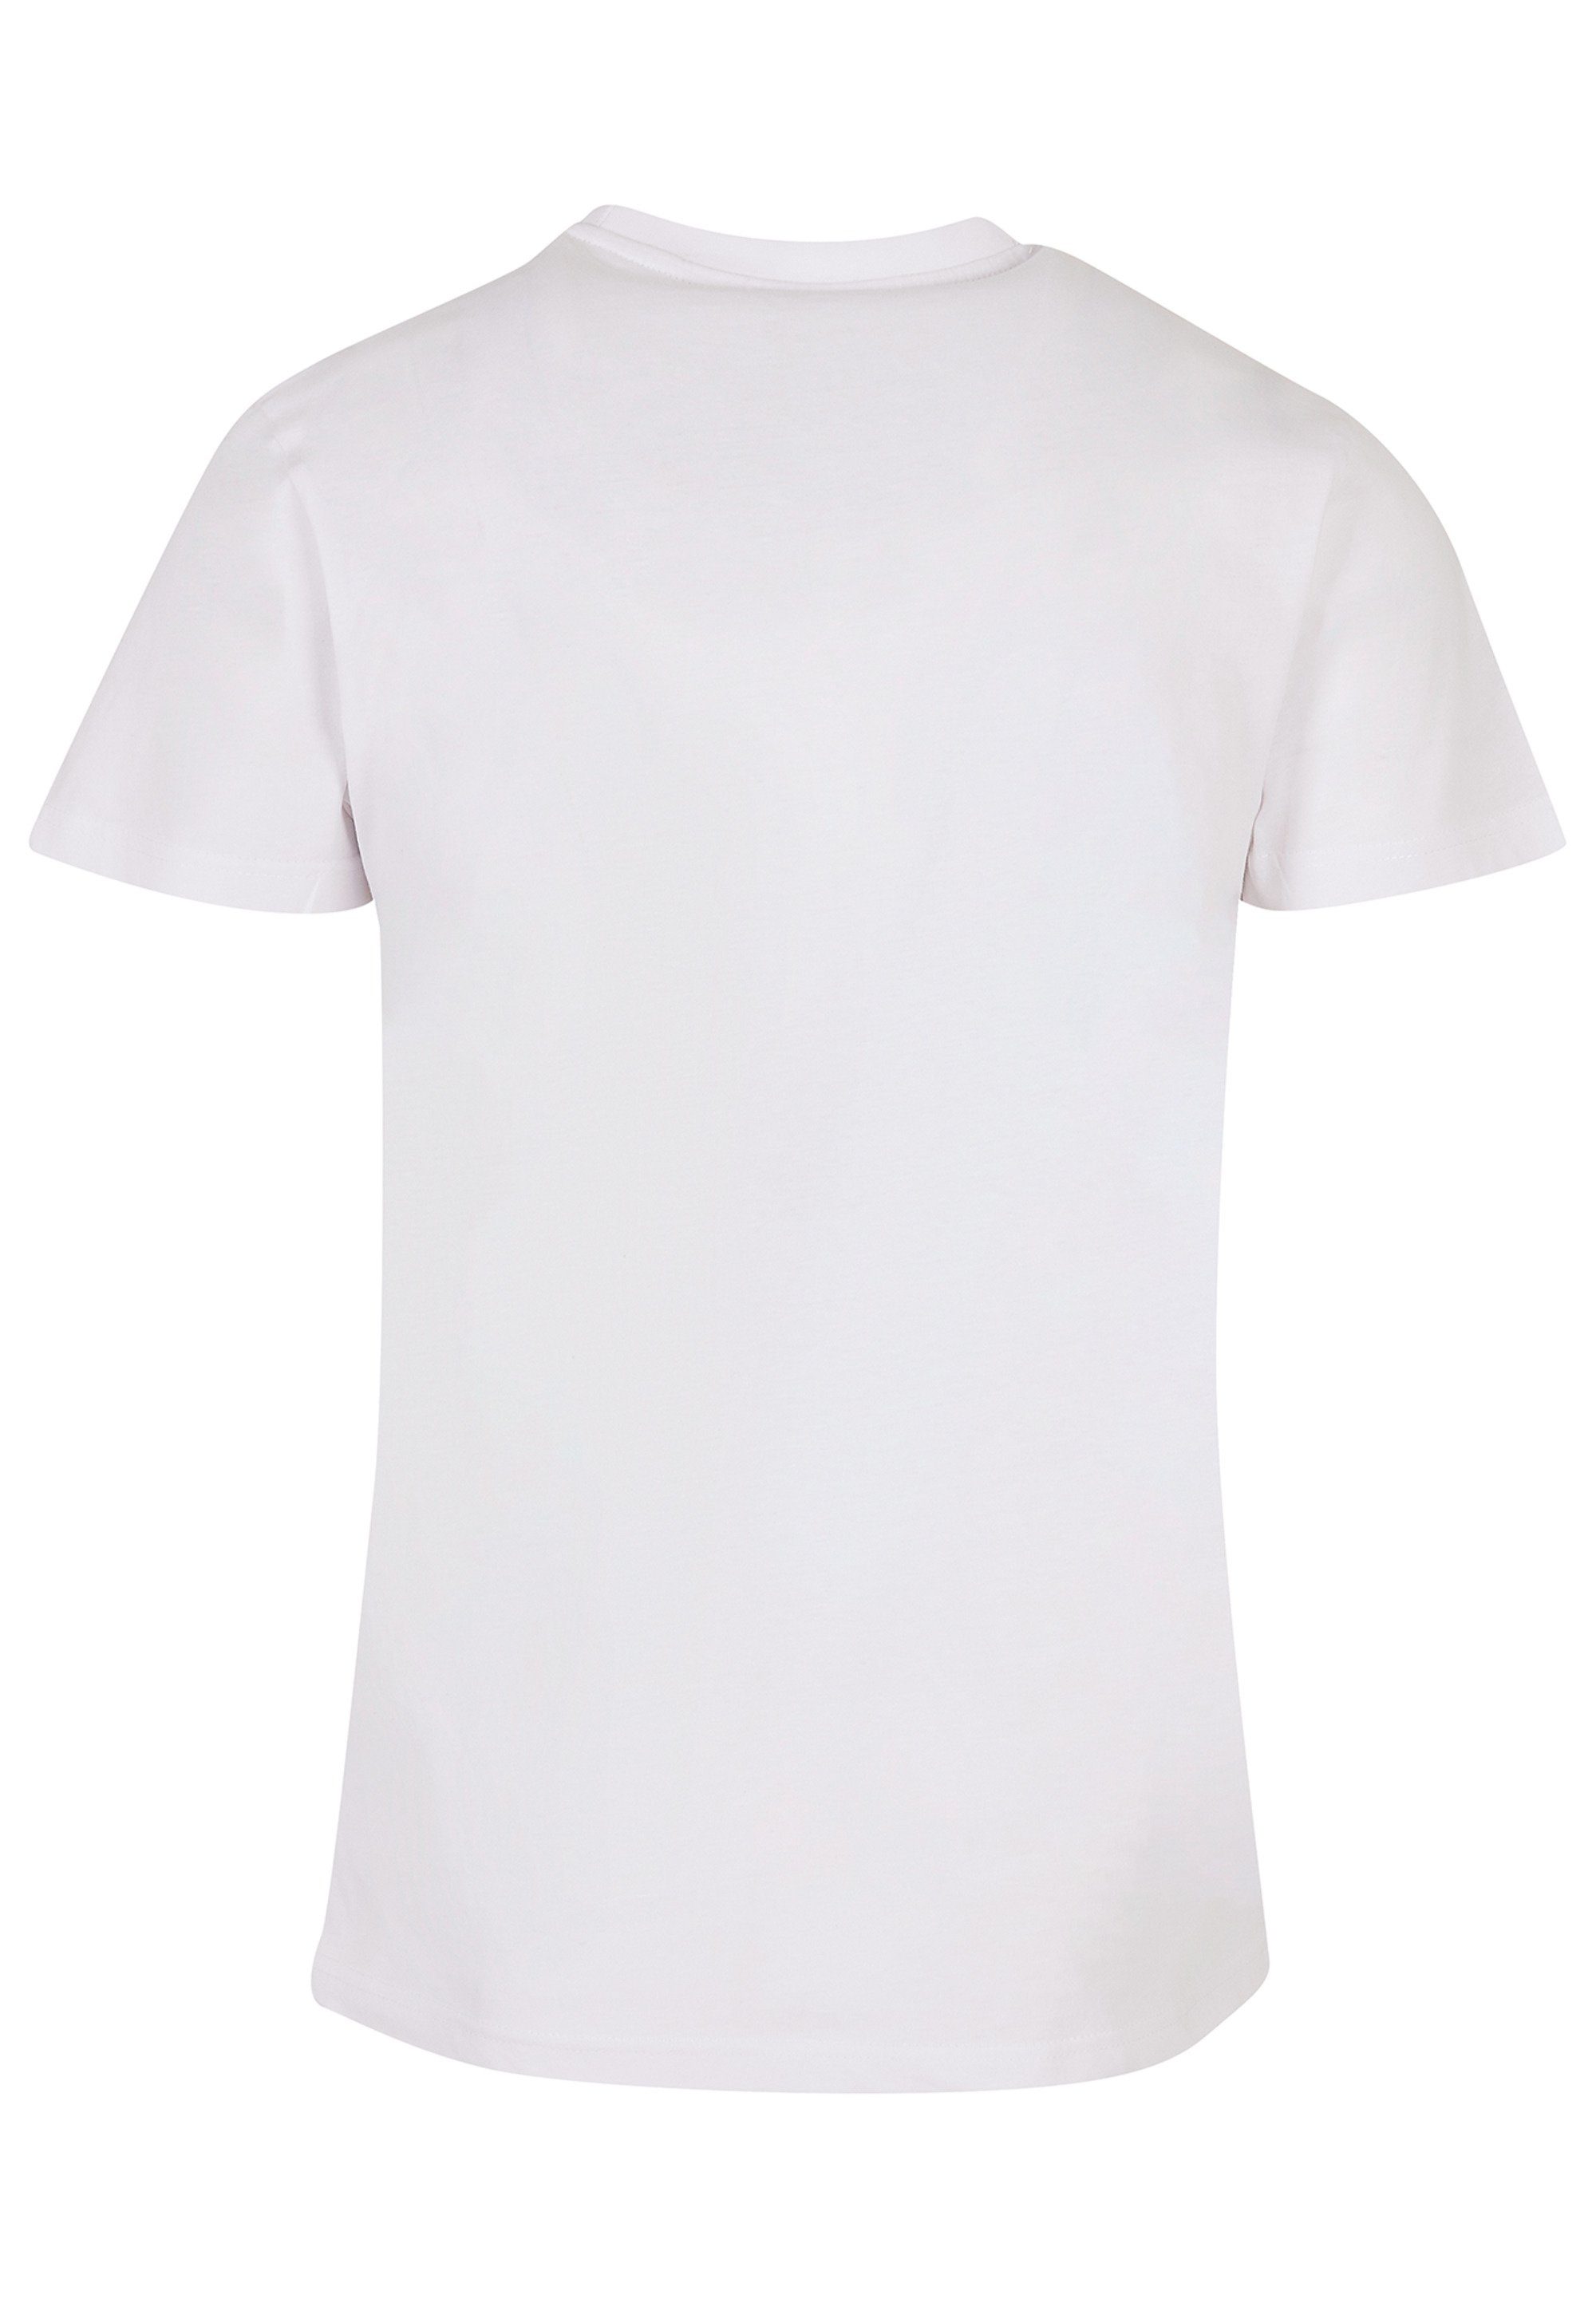 Basketball weiß Spieler Print T-Shirt F4NT4STIC